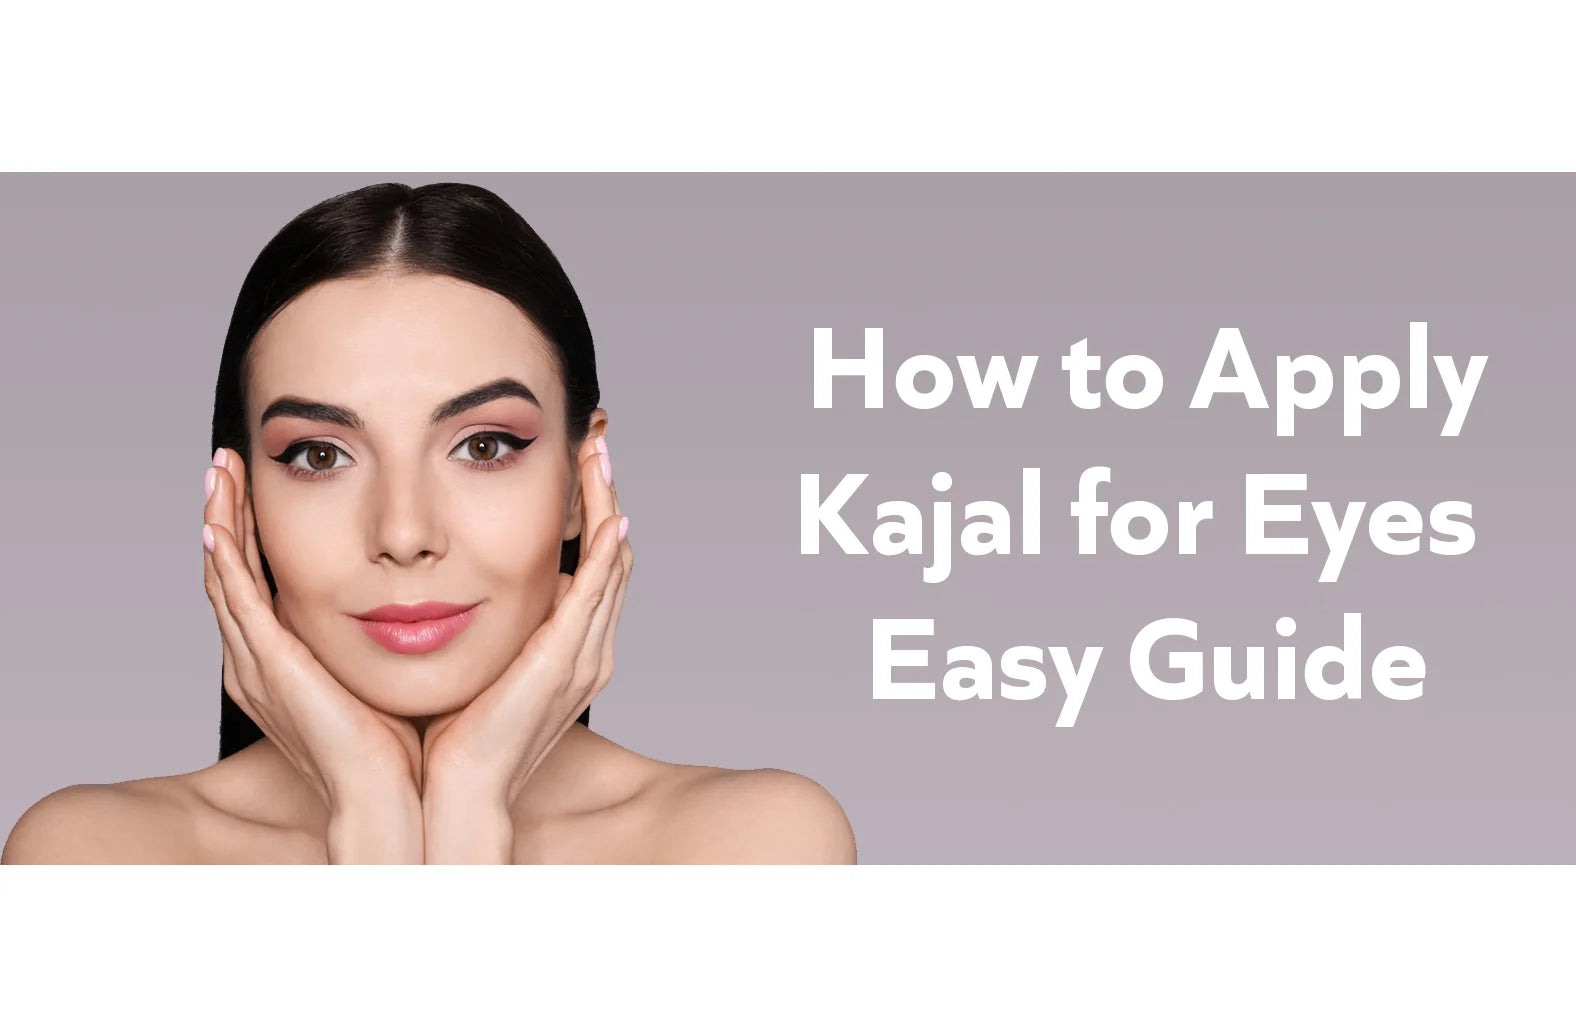 How to Apply Kajal for Eyes - Easy Guide